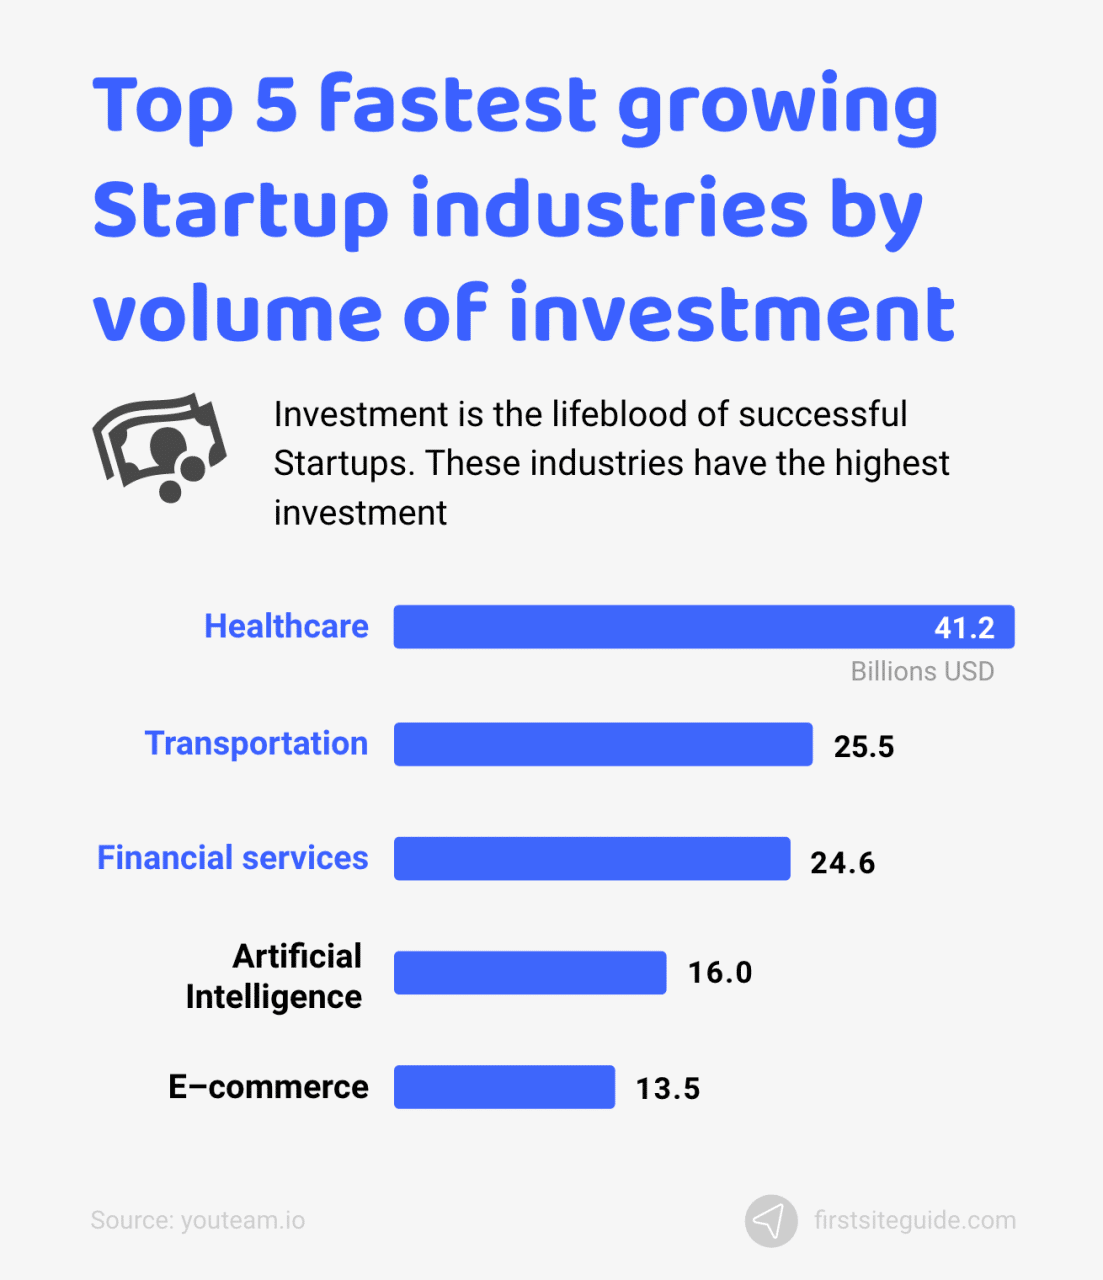 Los 5 sectores de las startups que más crecen por volumen de inversión